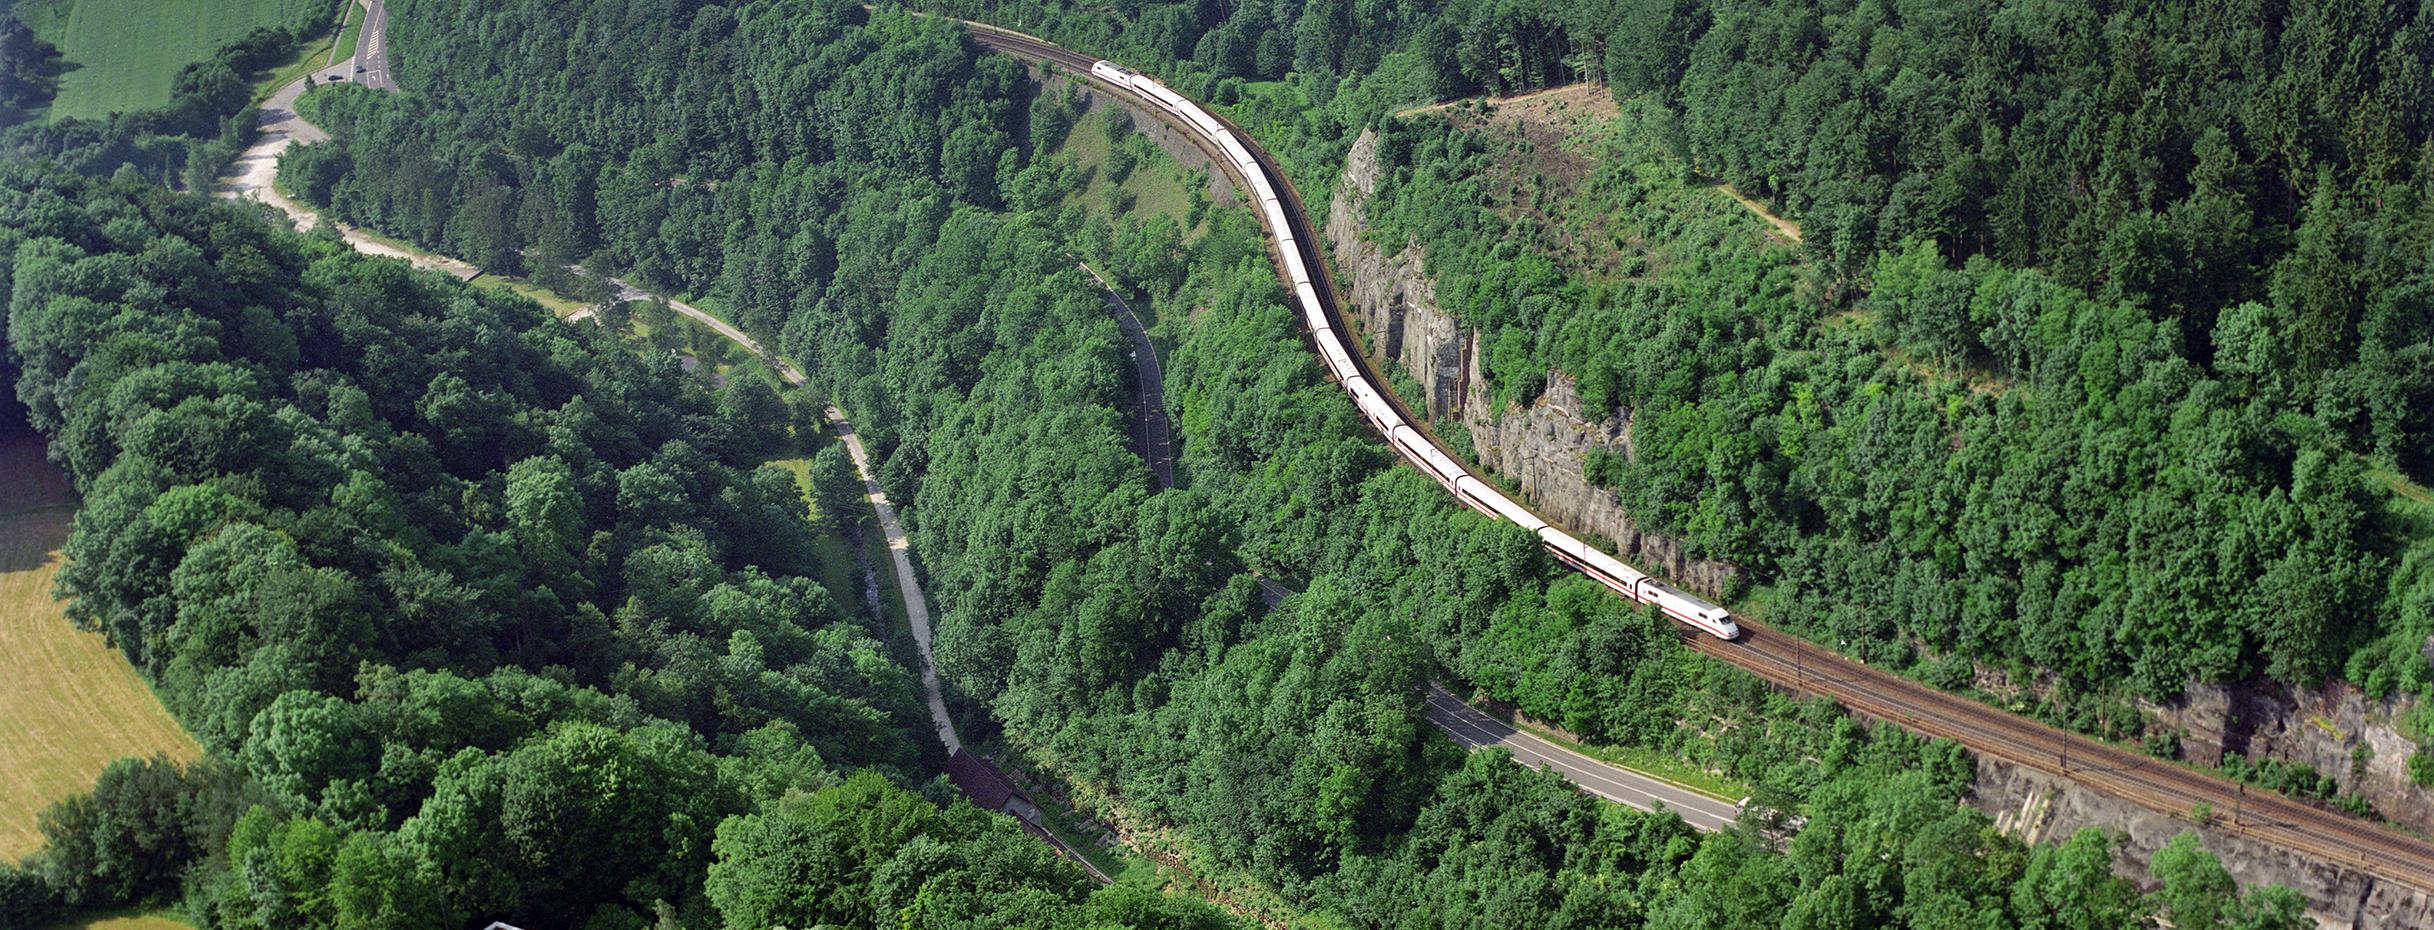 Luftbild zeigt einen weißen ICE-Zug wie er die Schienenstrecke an einem Berg hochfährt.